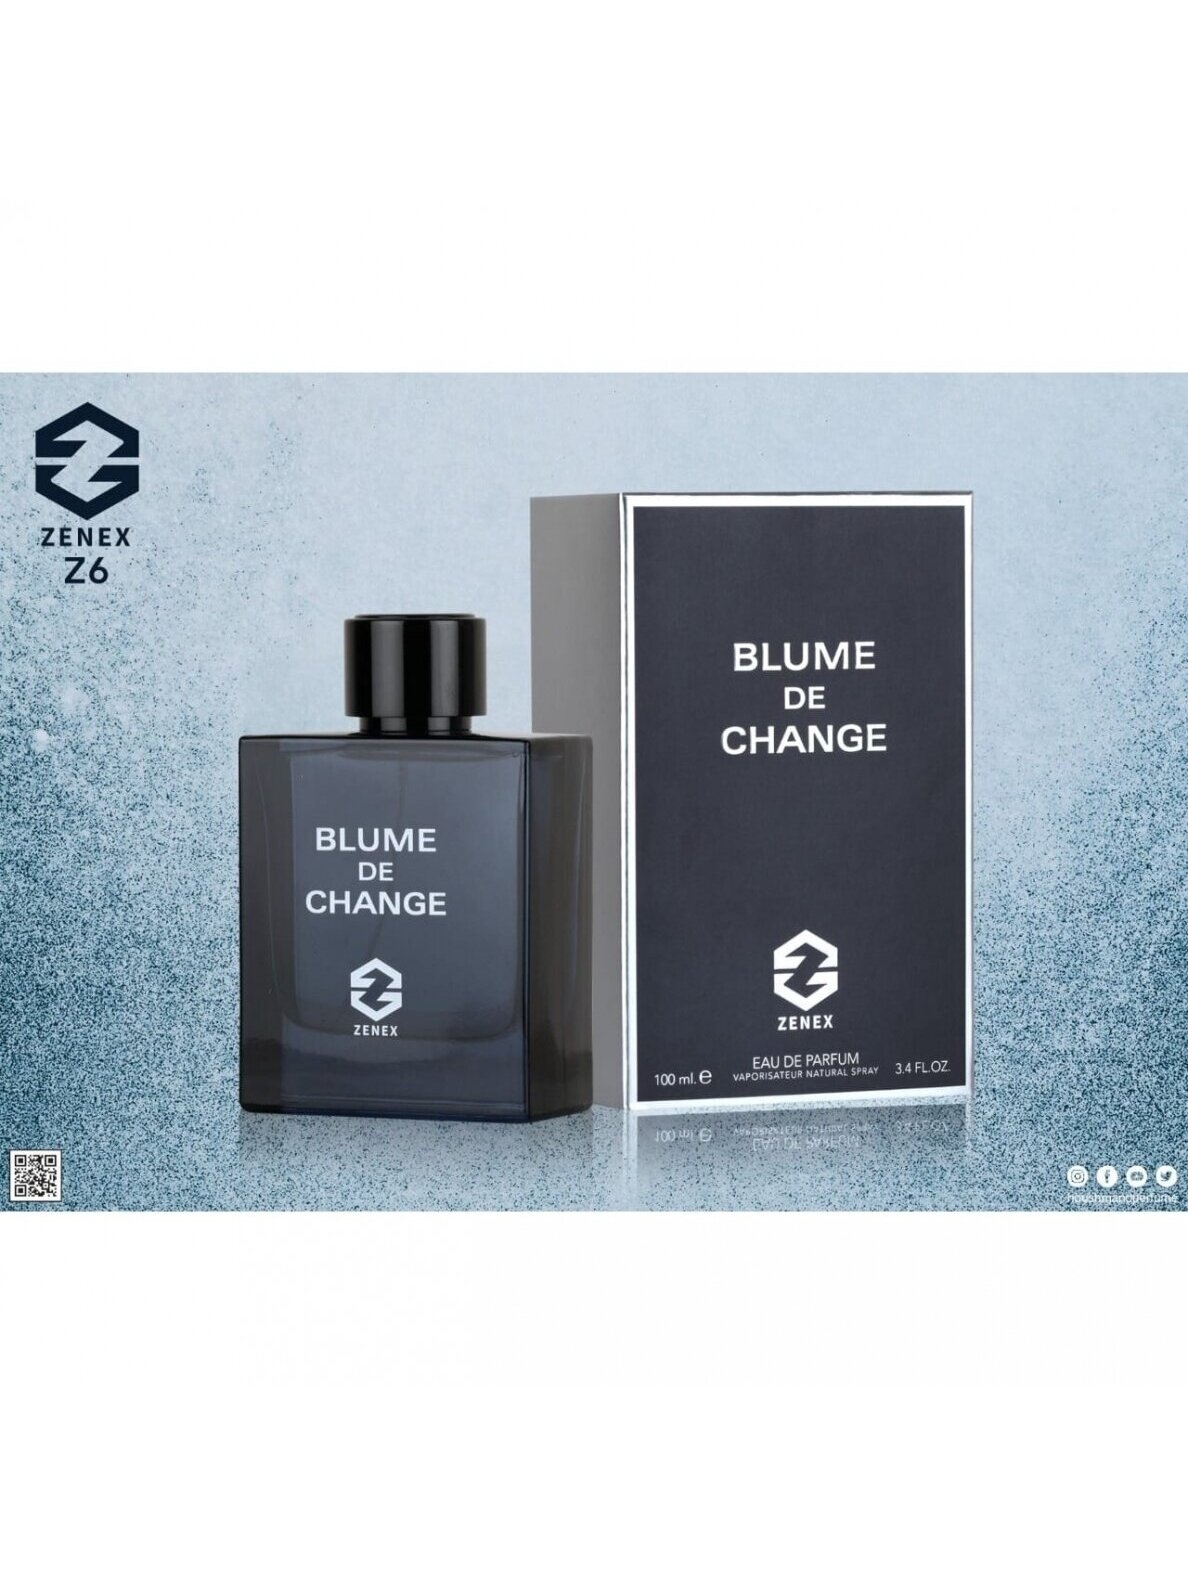 Blume de Change (Chanel Bleu de Chanel) arabic perfume